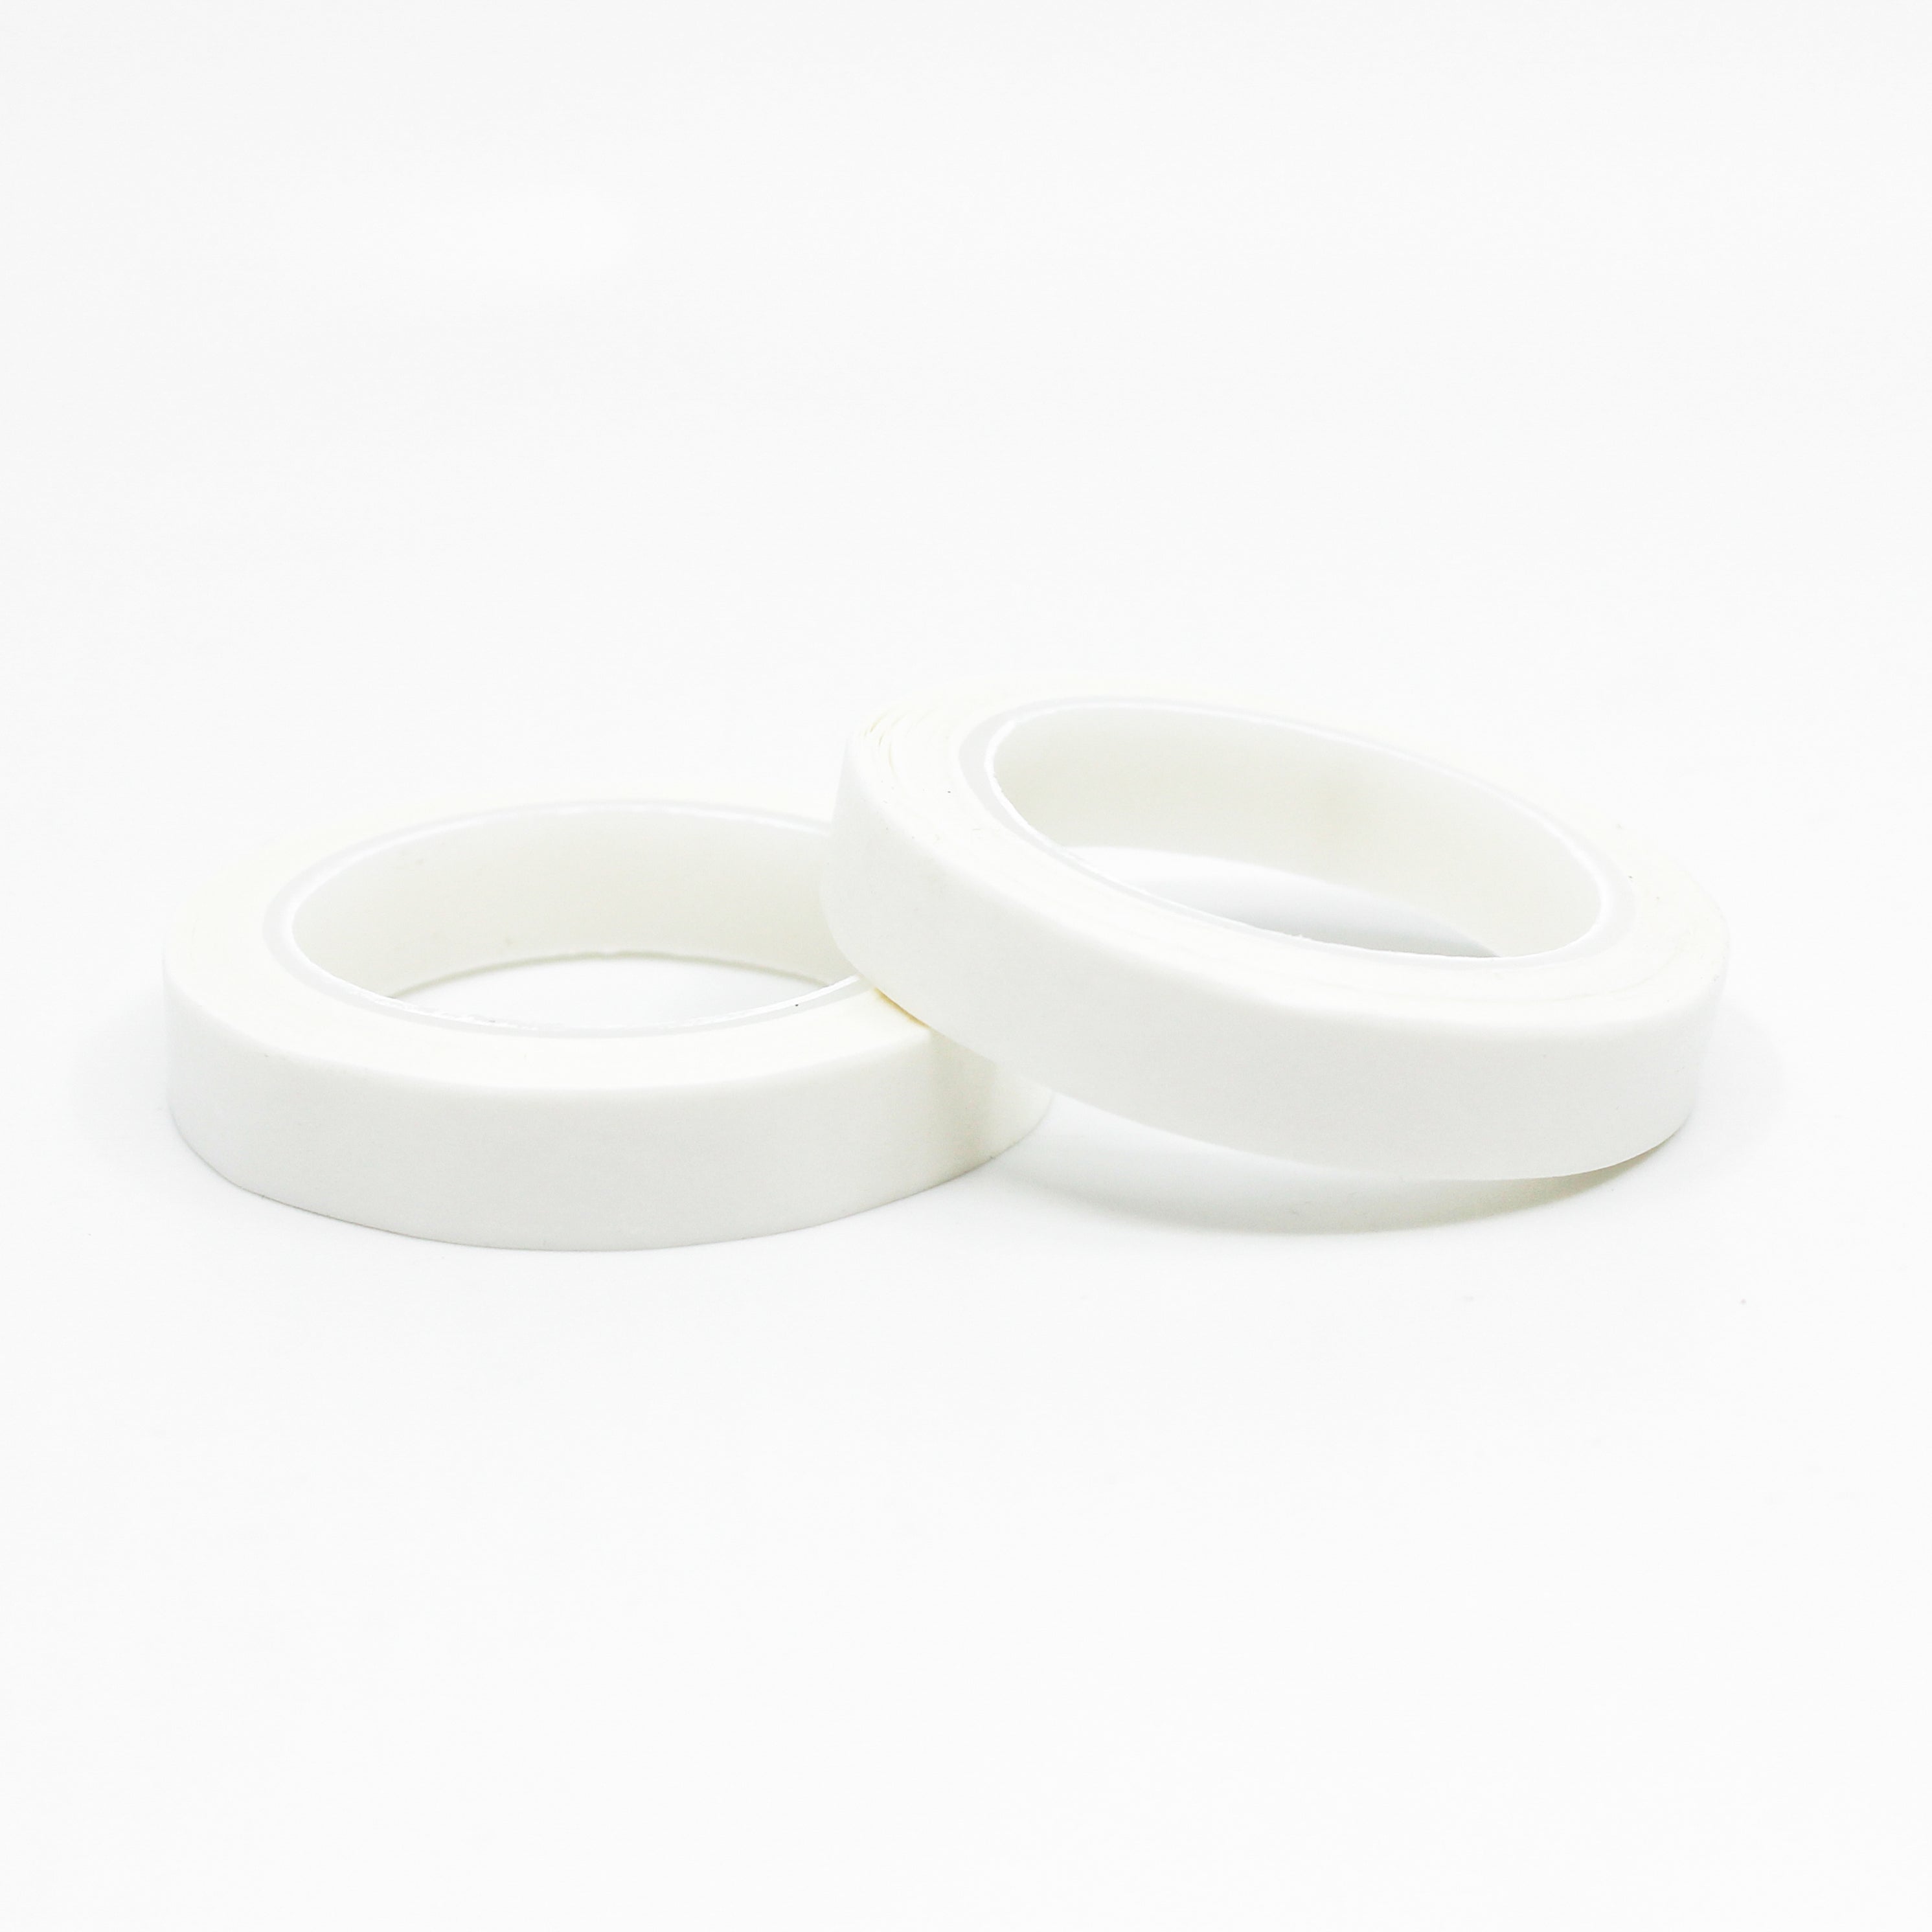 Washi Tape Storage Ring, Stainless Steel Washi Tape Organizer Ring